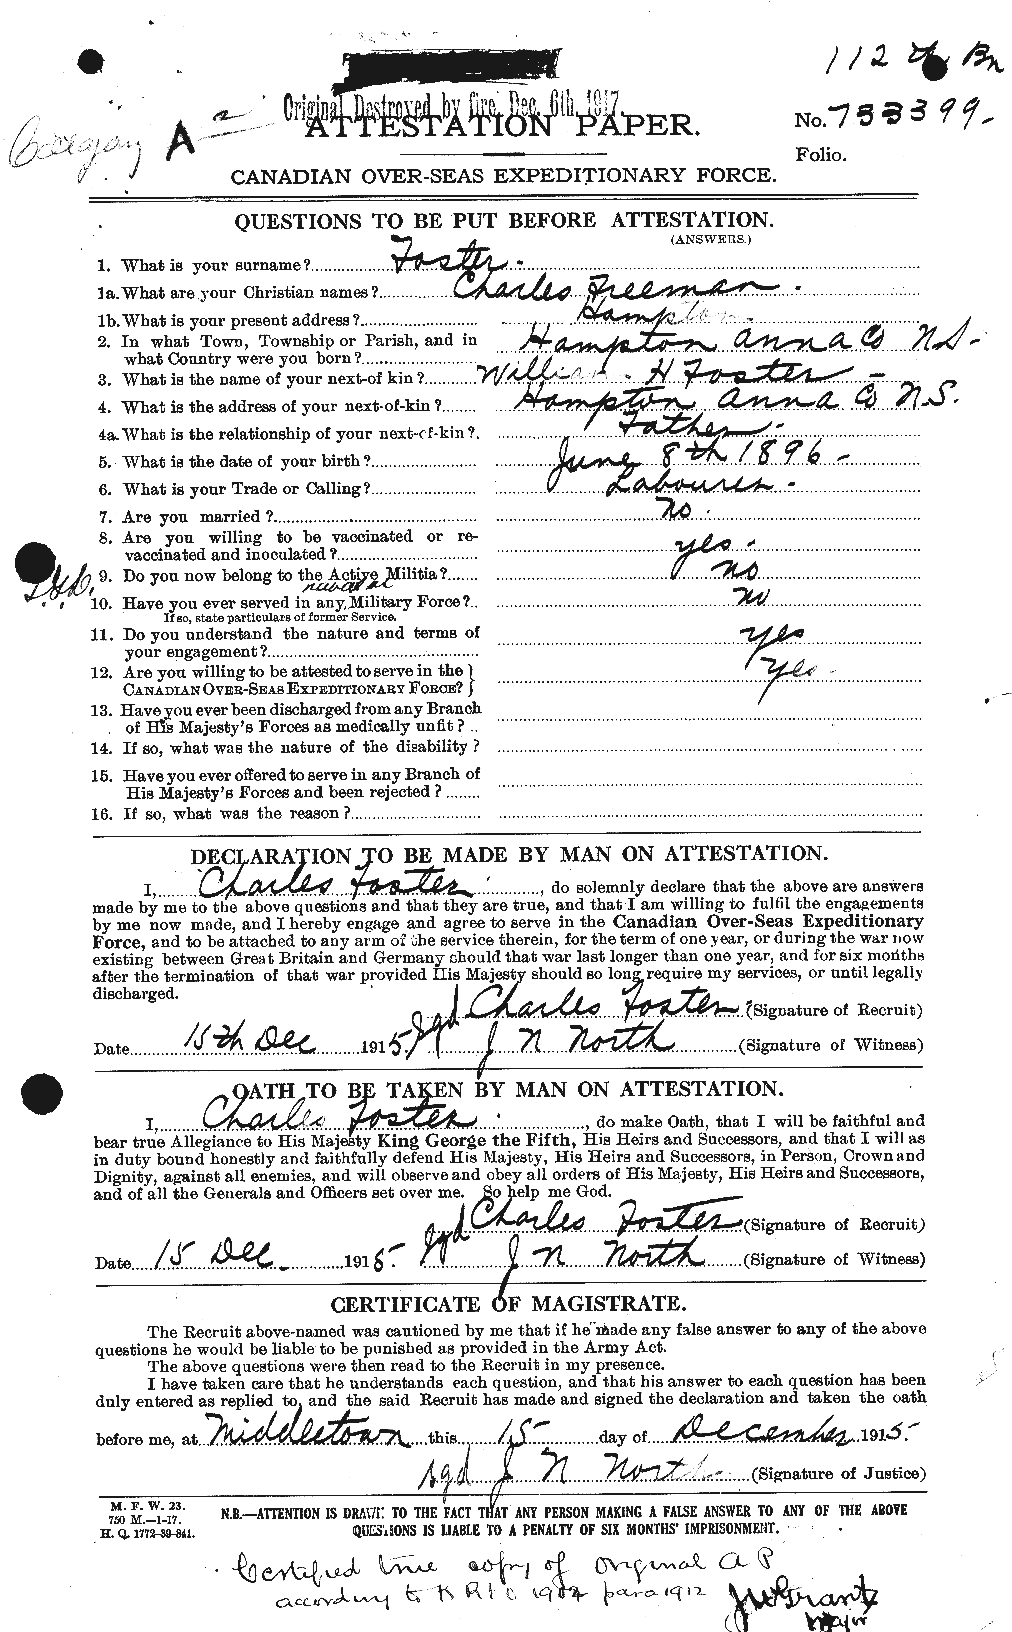 Dossiers du Personnel de la Première Guerre mondiale - CEC 330516a